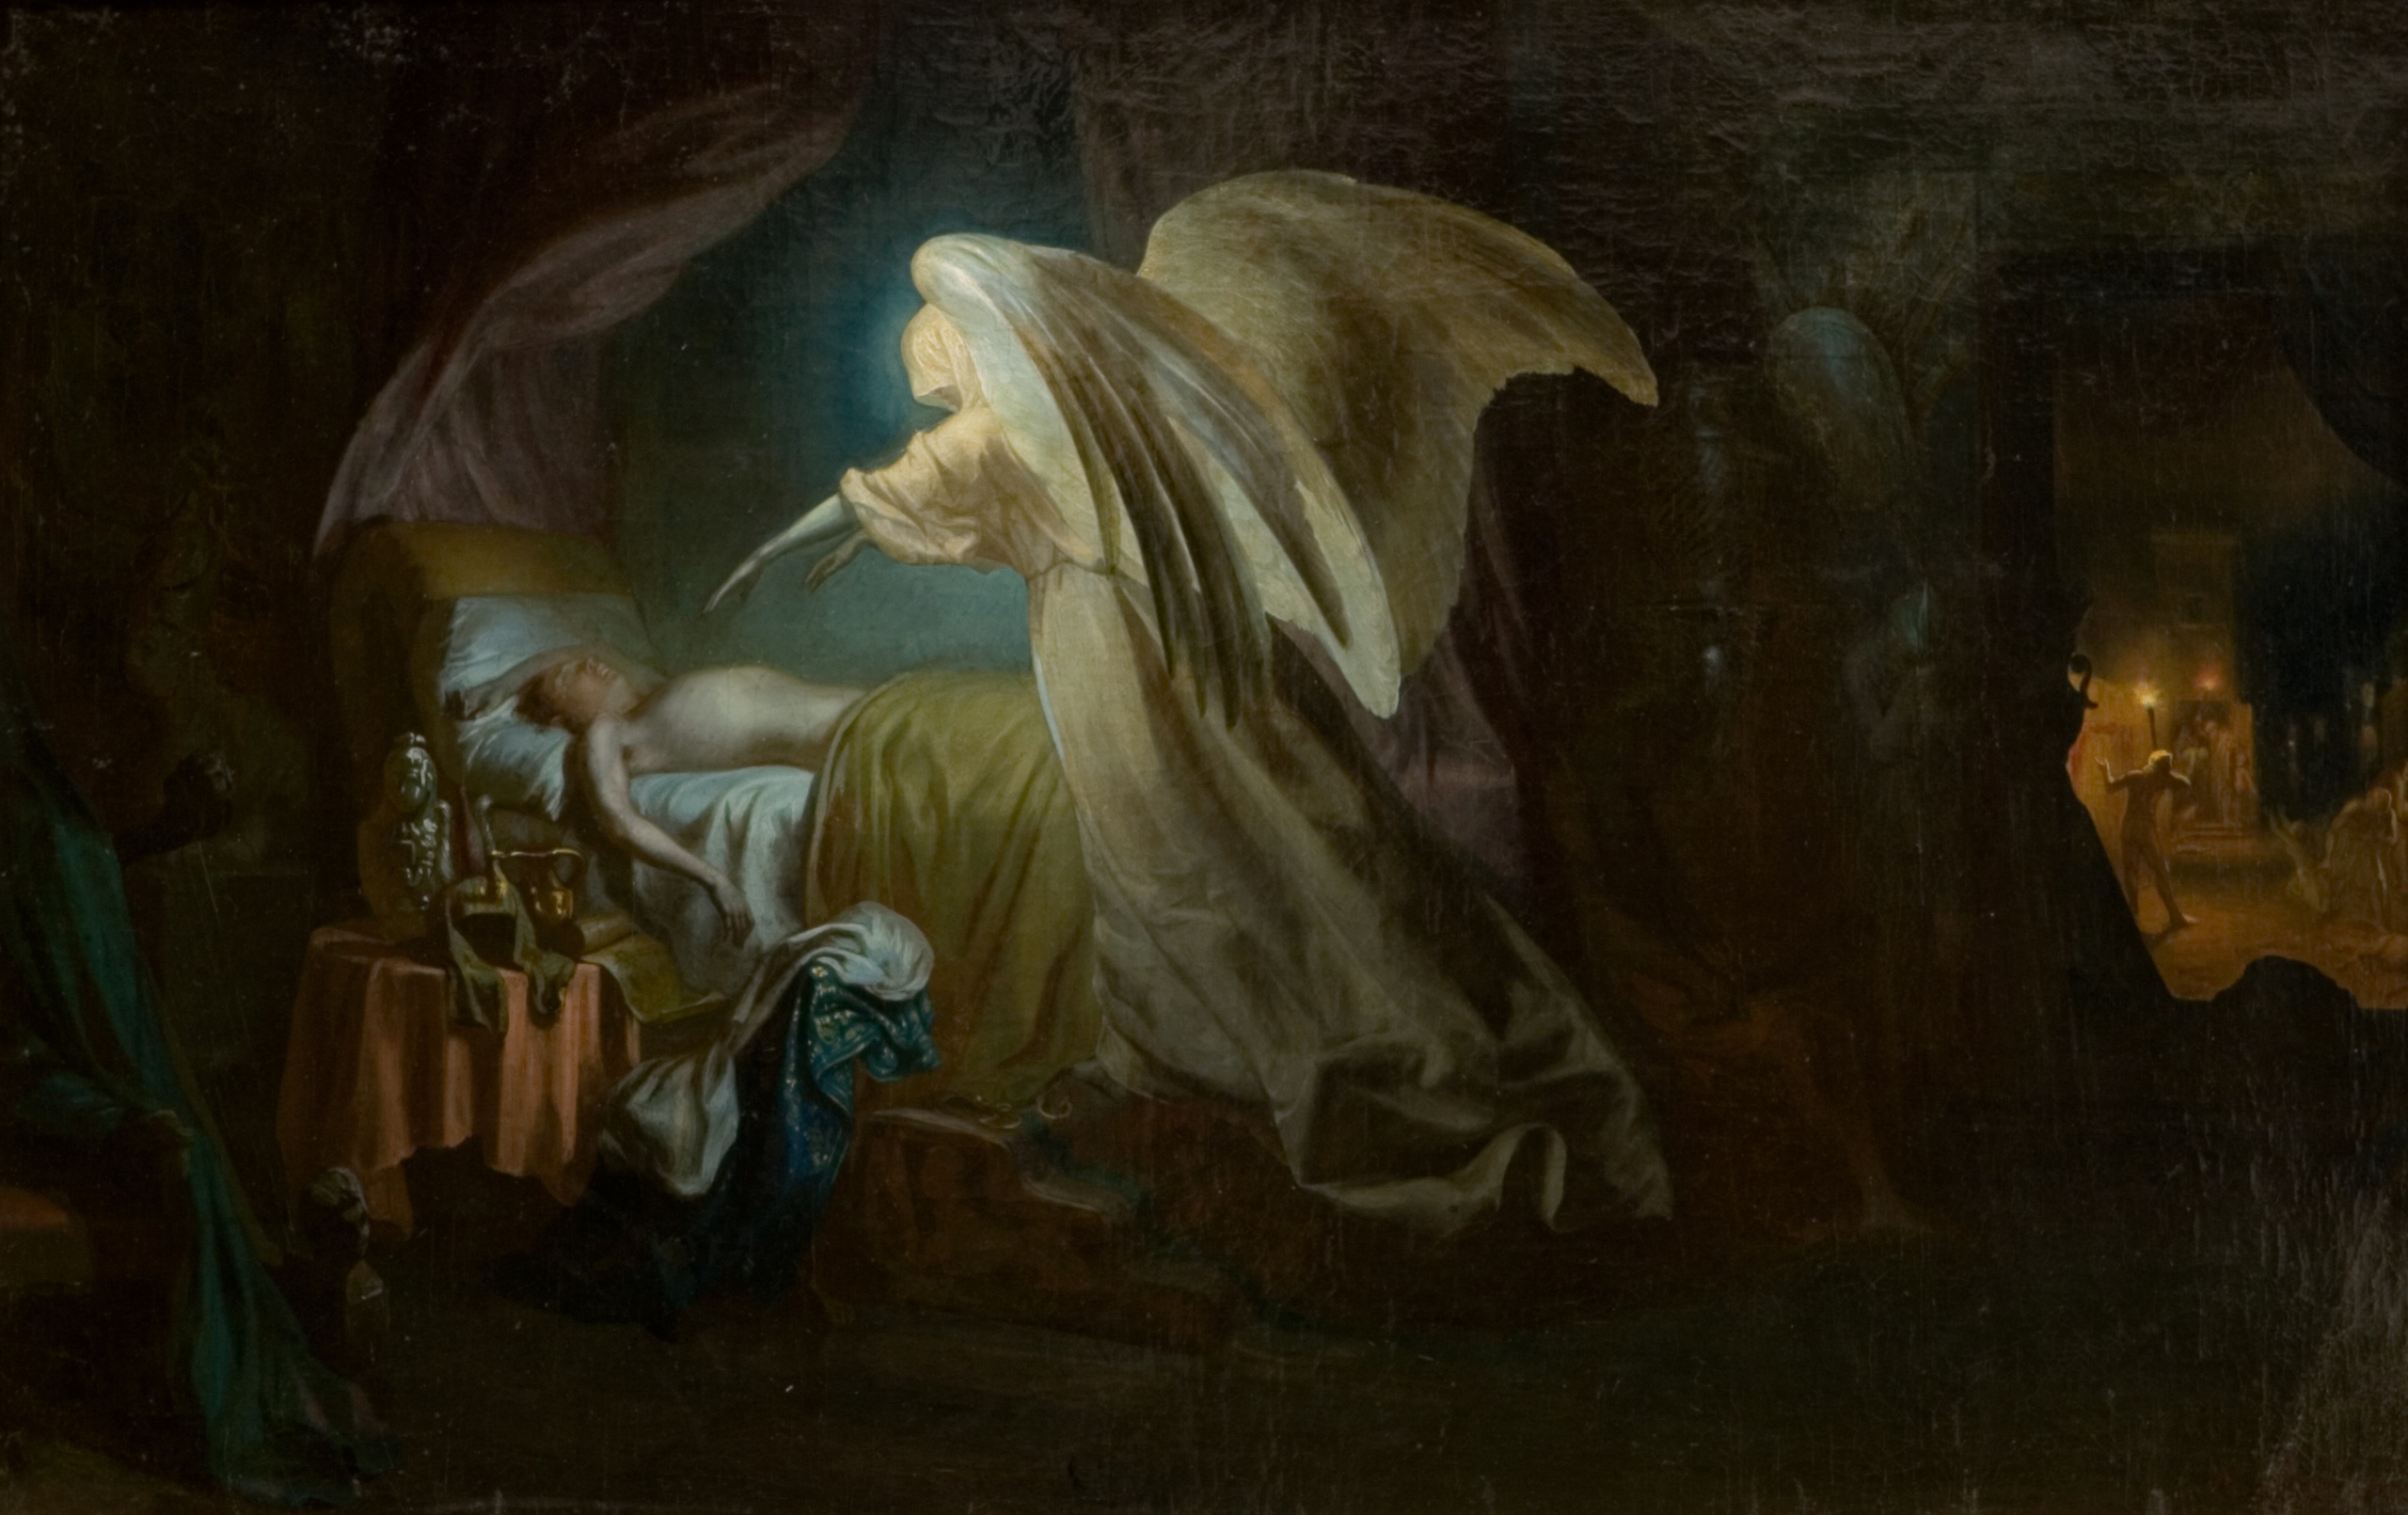 Anioł Śmierci zabija mieszkańców Egiptu by Ilya Repin - 1865 - 67 x 104,5 cm 